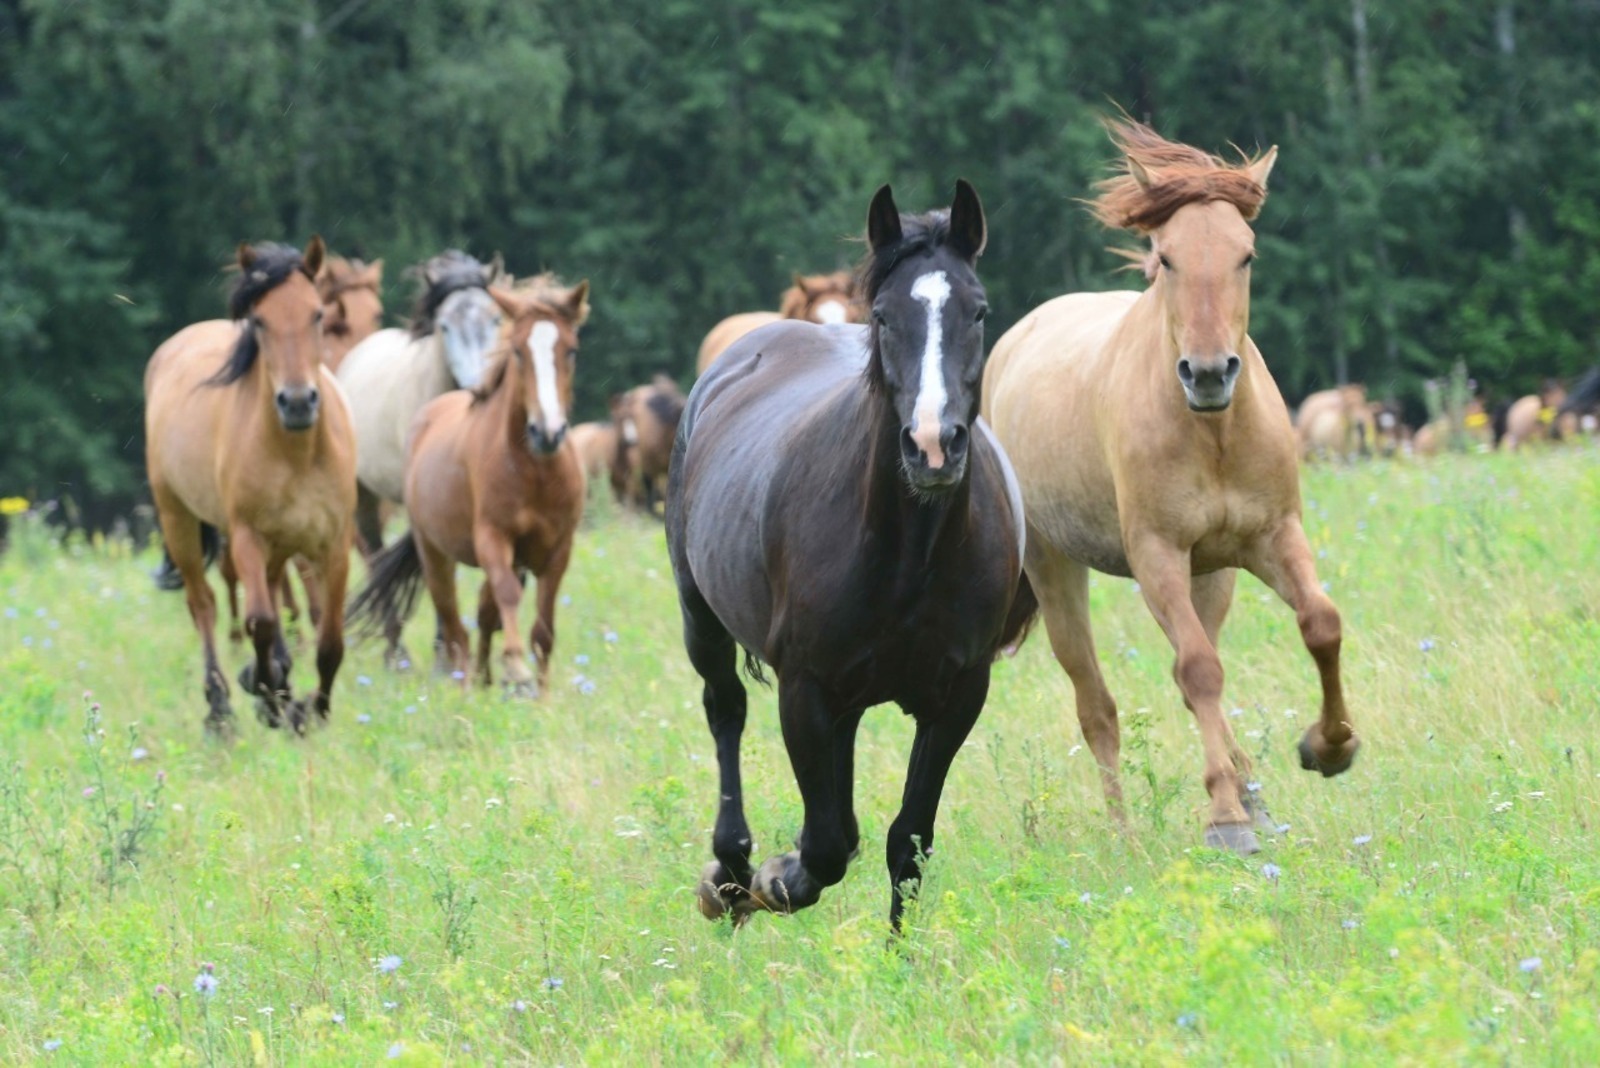 Сегодня, 29 июля на берегу озера Графское в Баймакском районе стартовал республиканский фестиваль лошадей башкирской породы «Башҡорт аты» («Башкирская лошадь»).